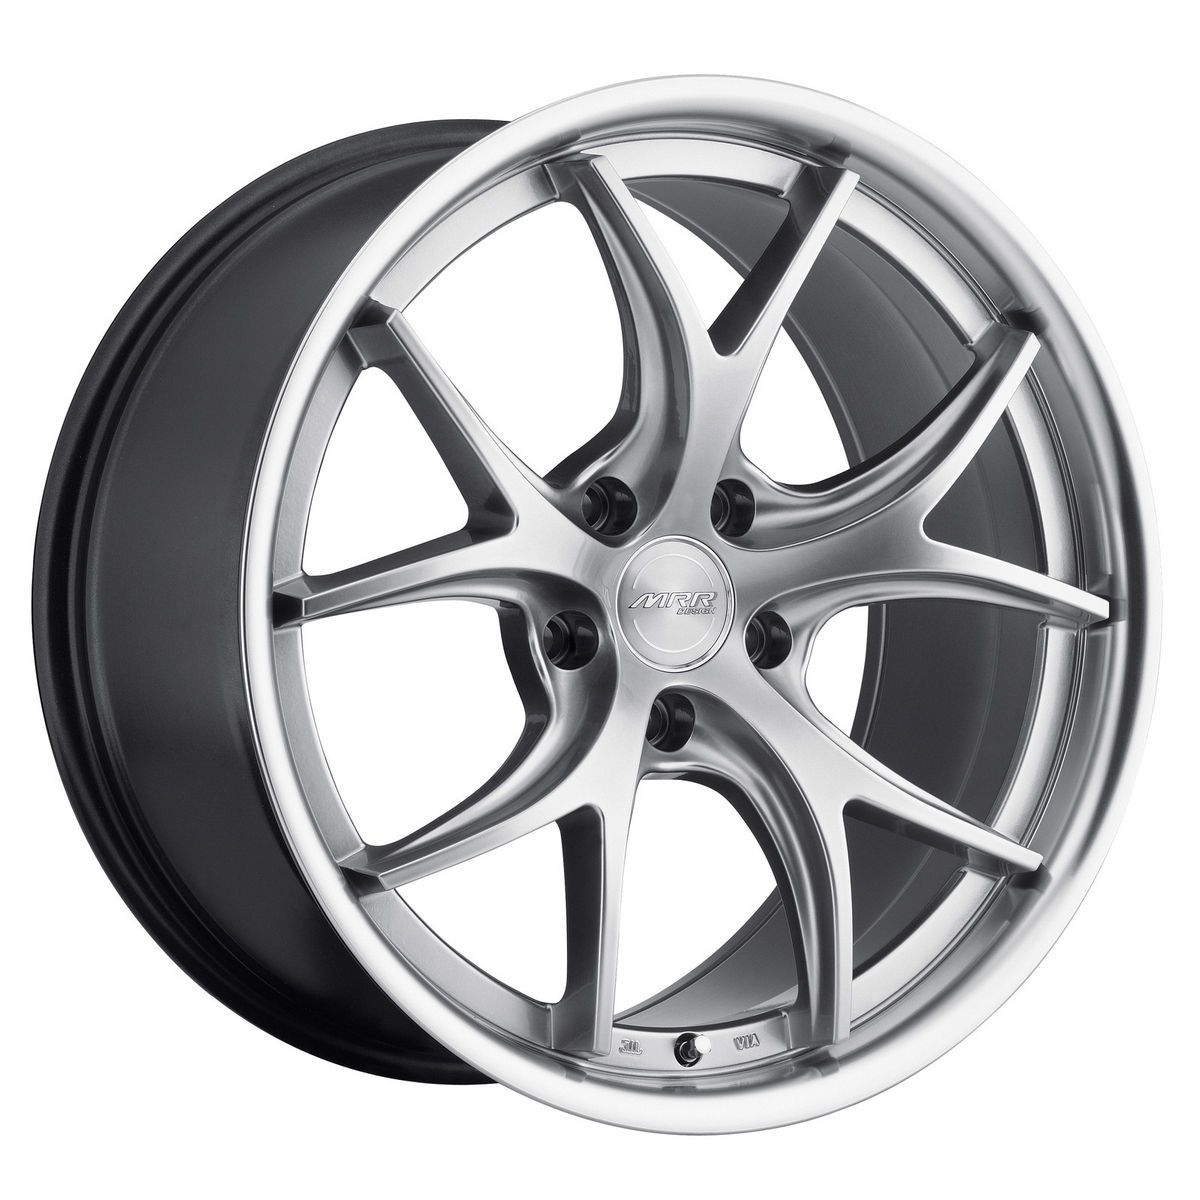 19 MRR GT8 Hyper Silver Wheels Rims Fit Lexus ES GS RX LS SC300 sc400